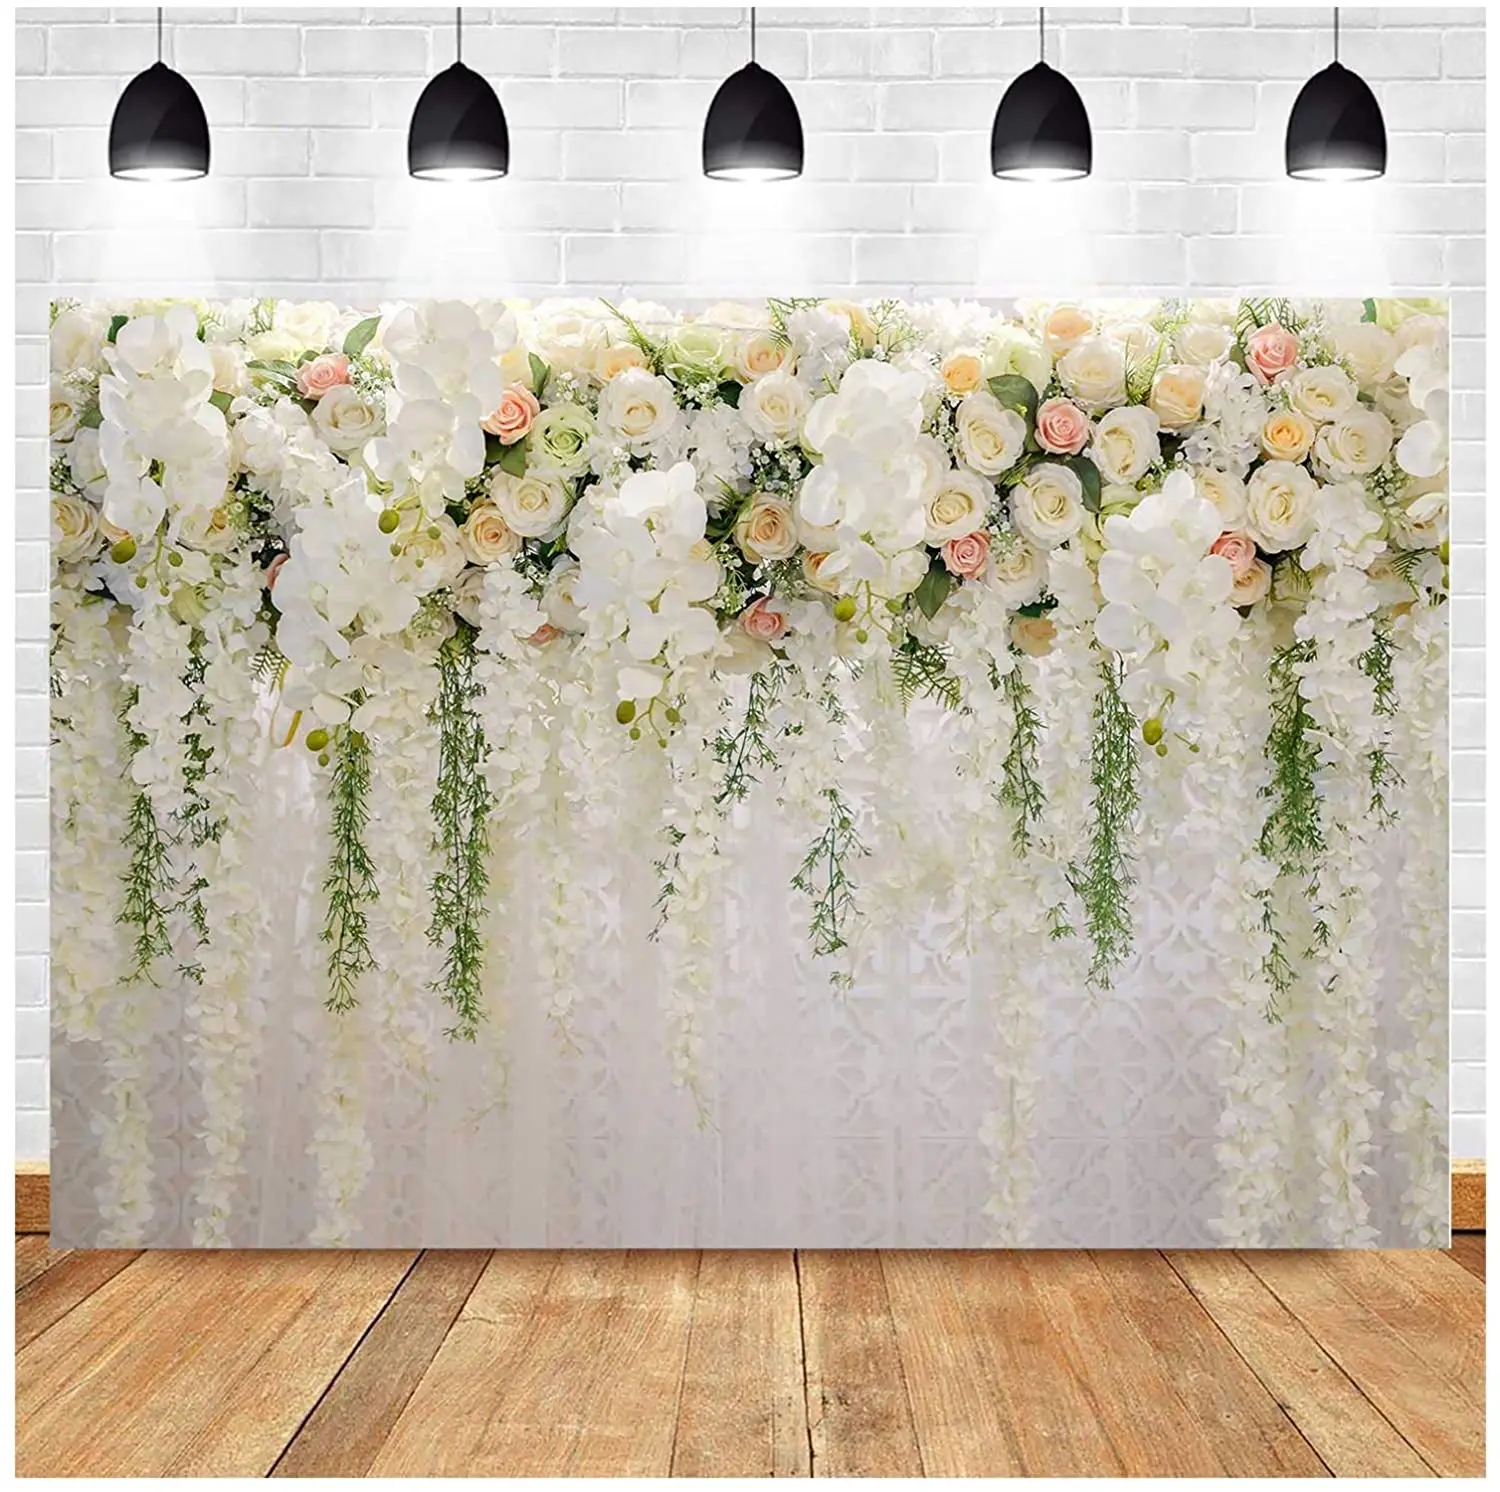 

Фон для свадебной фотосъемки с изображением белых роз и цветов для свадебной вечеринки фон для фотосъемки девичьей девочки на день рождени...